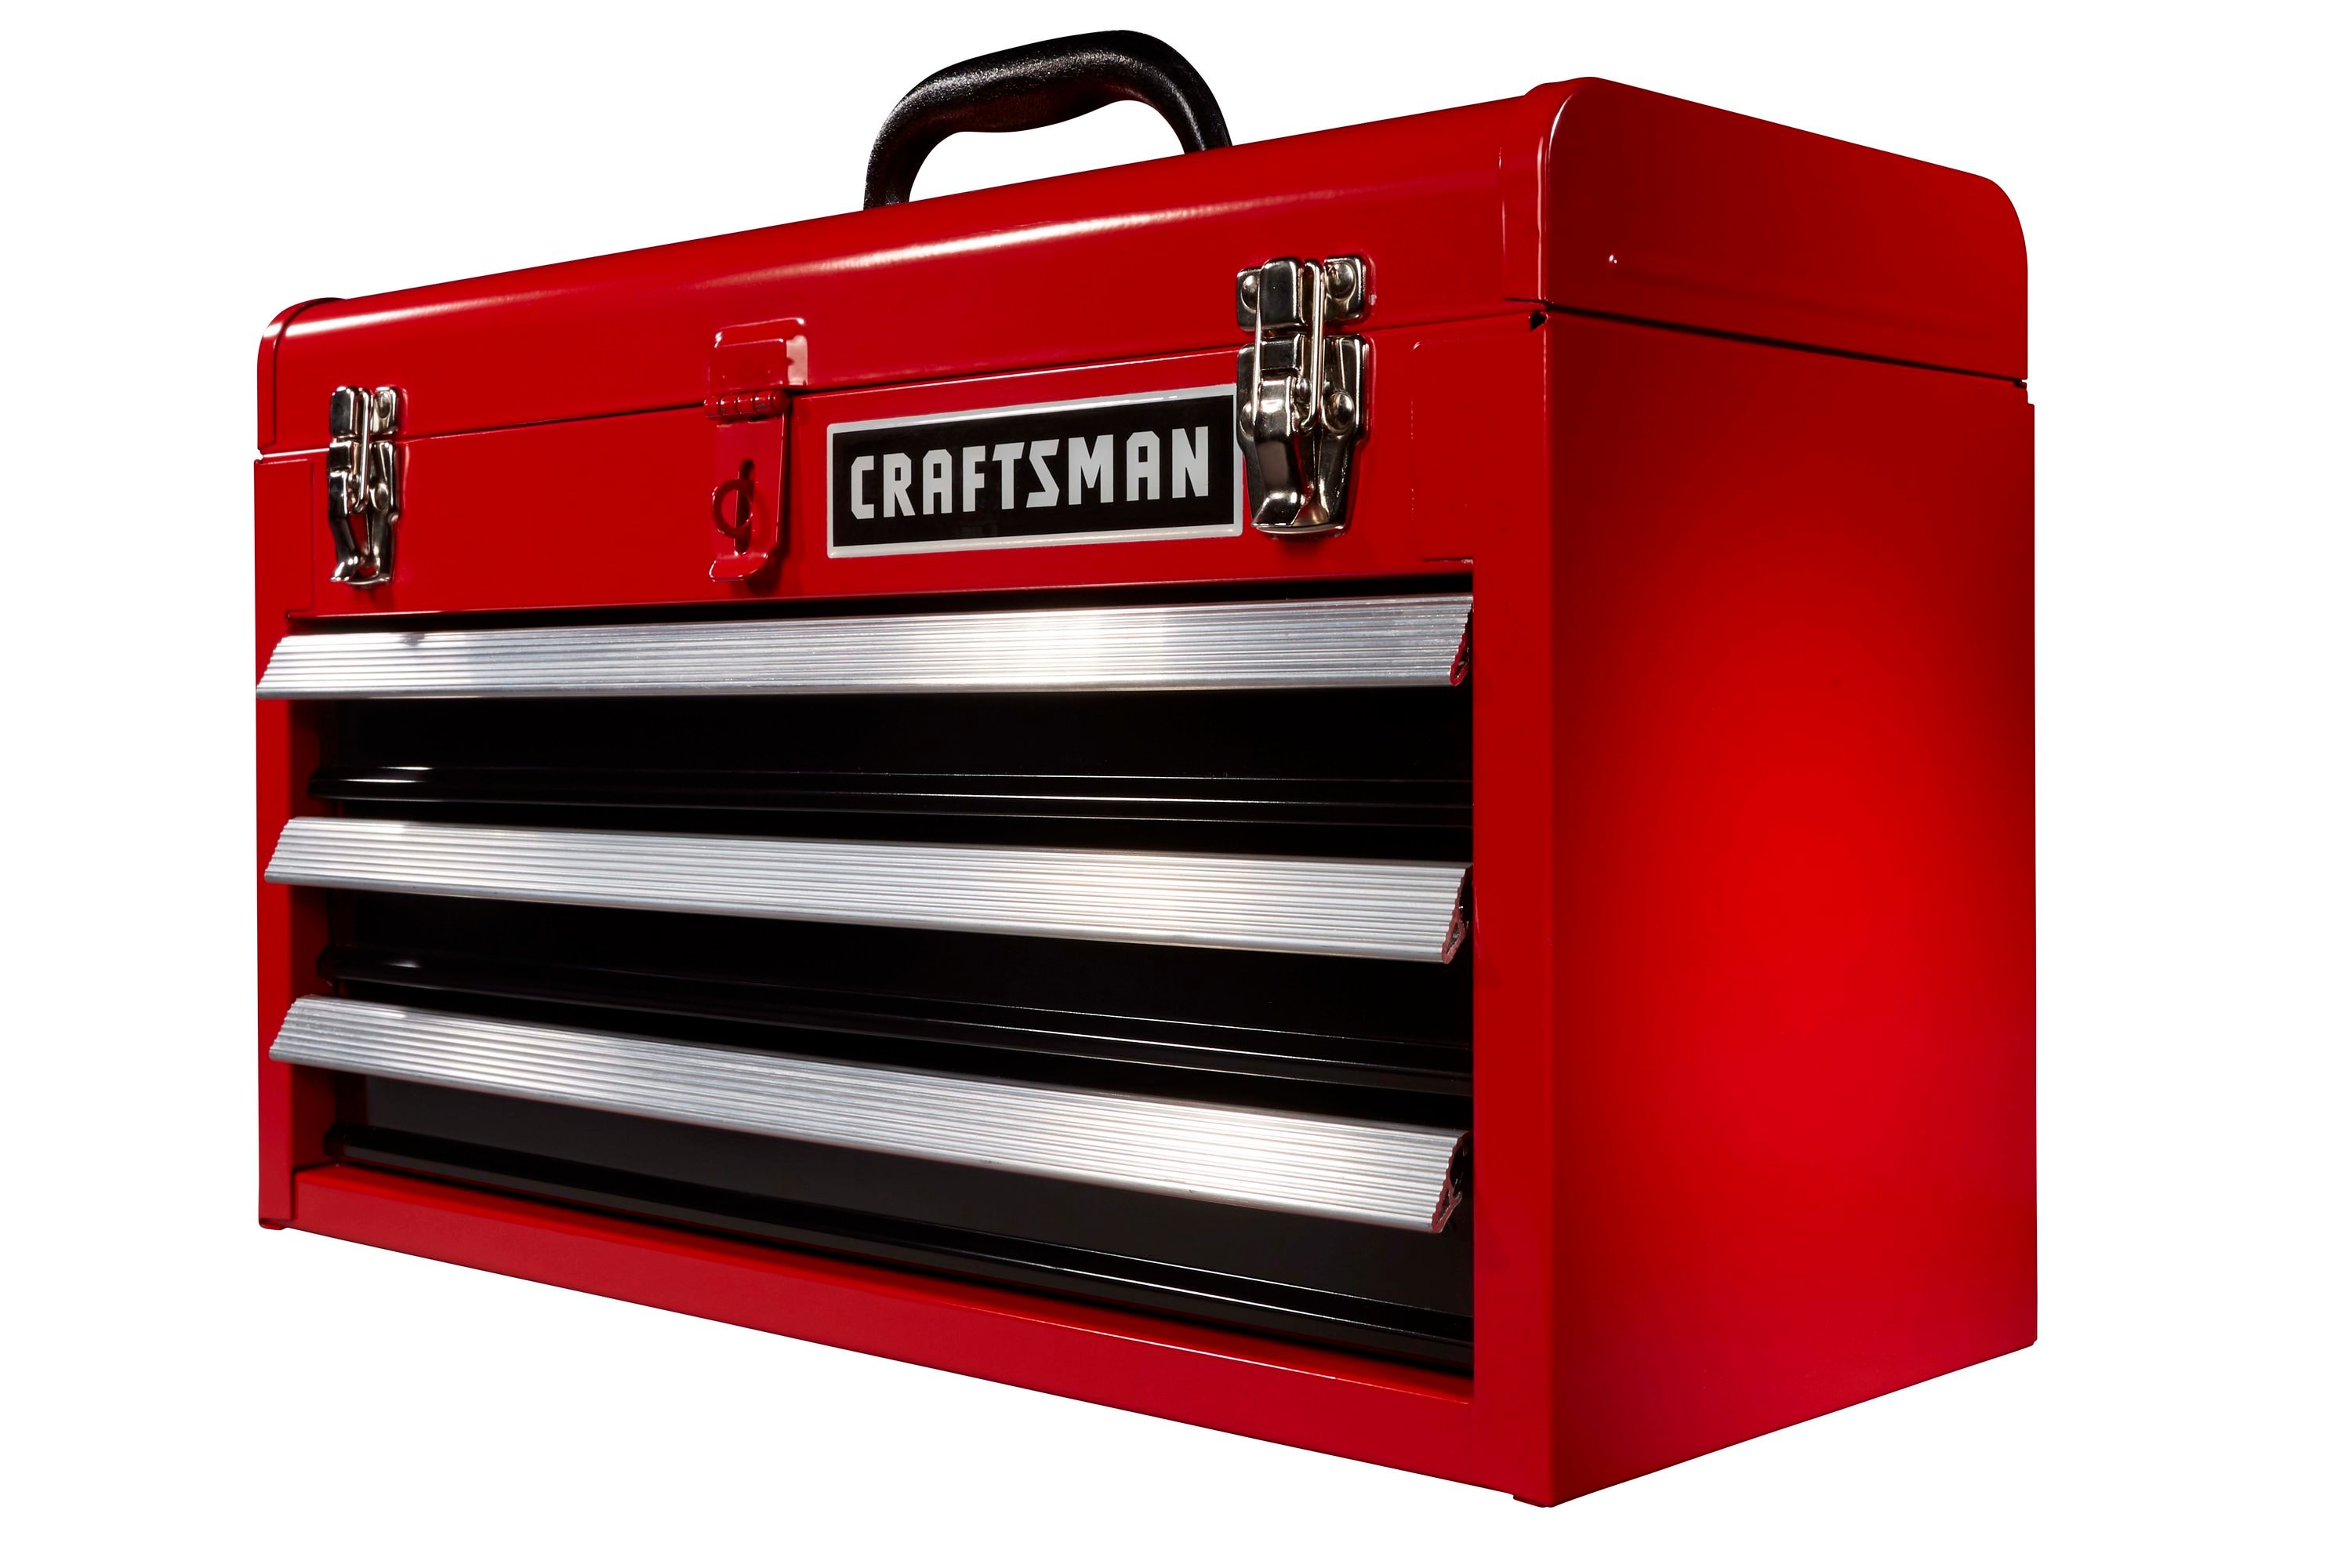 CRAFTSMAN Portable Tool Box 20.5in Ballbearing 3Drawer Red Steel